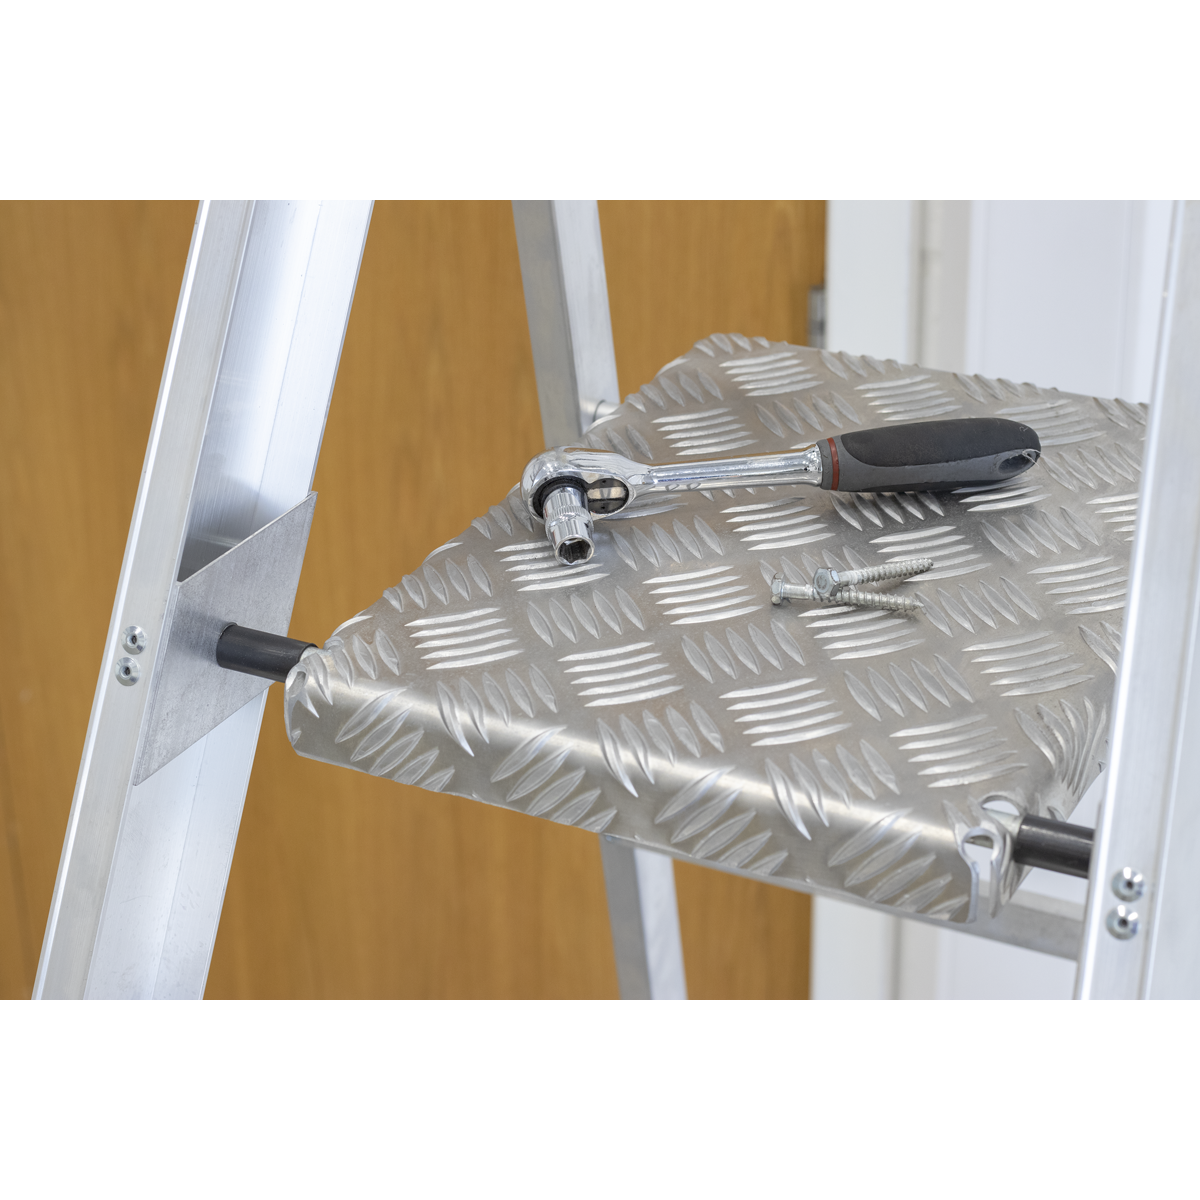 Aluminium Step Ladder 6-Tread Industrial BS EN 131